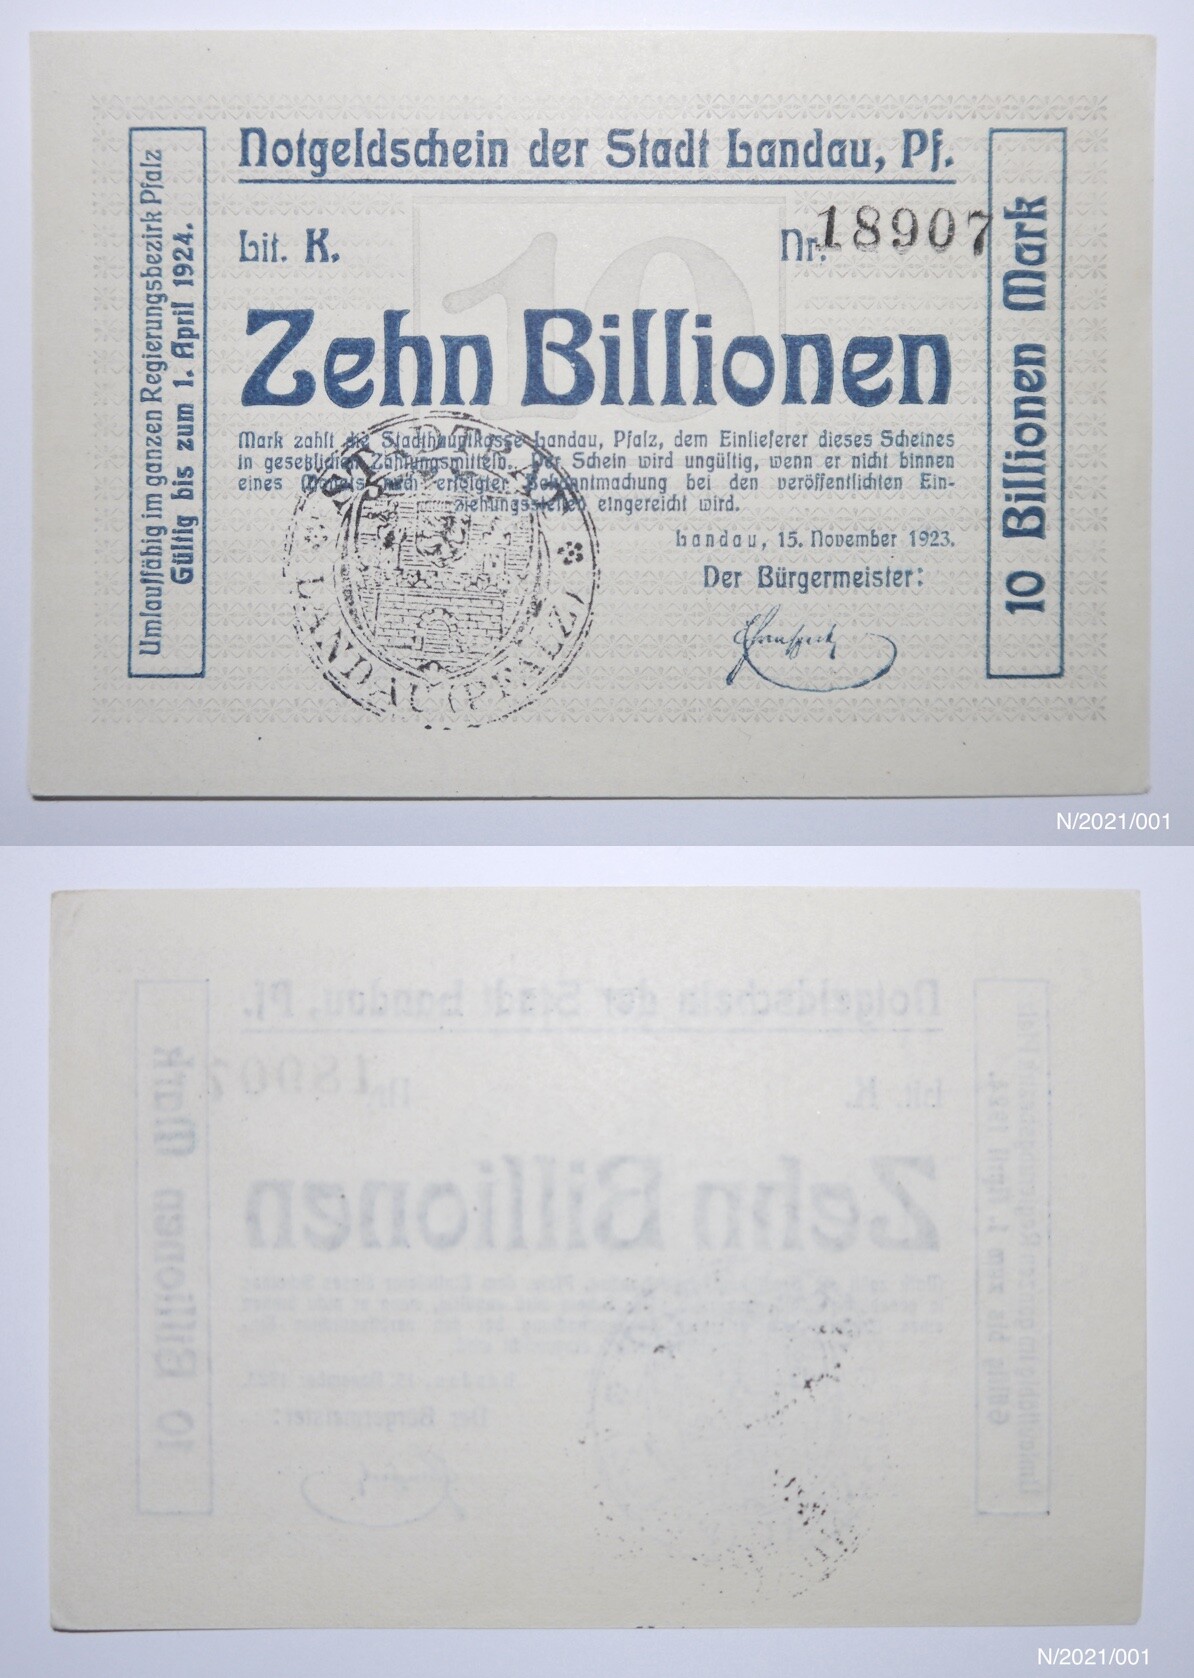 Notgeld Notgeldschein der Stadt Landau, Pf. Zehn Billionen Nr. 18907 (Museumsgesellschaft Bad Dürkheim e.V. CC BY-NC-SA)